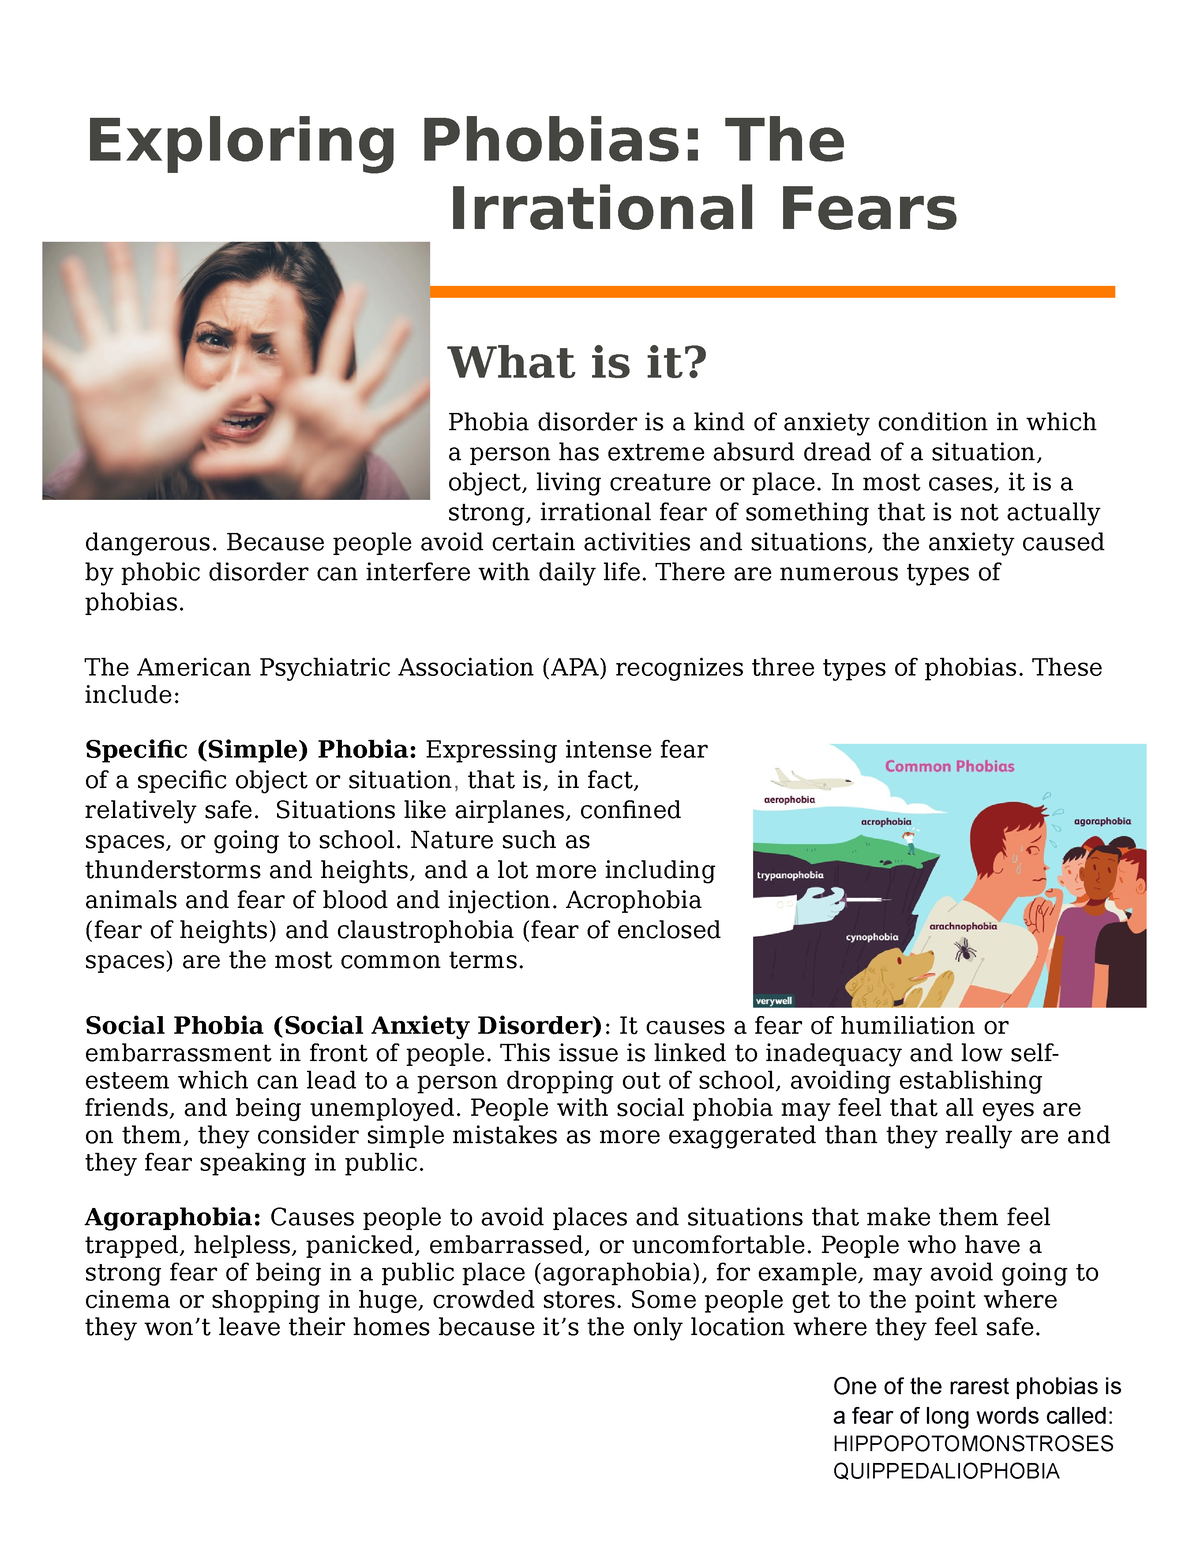 short case study on phobia